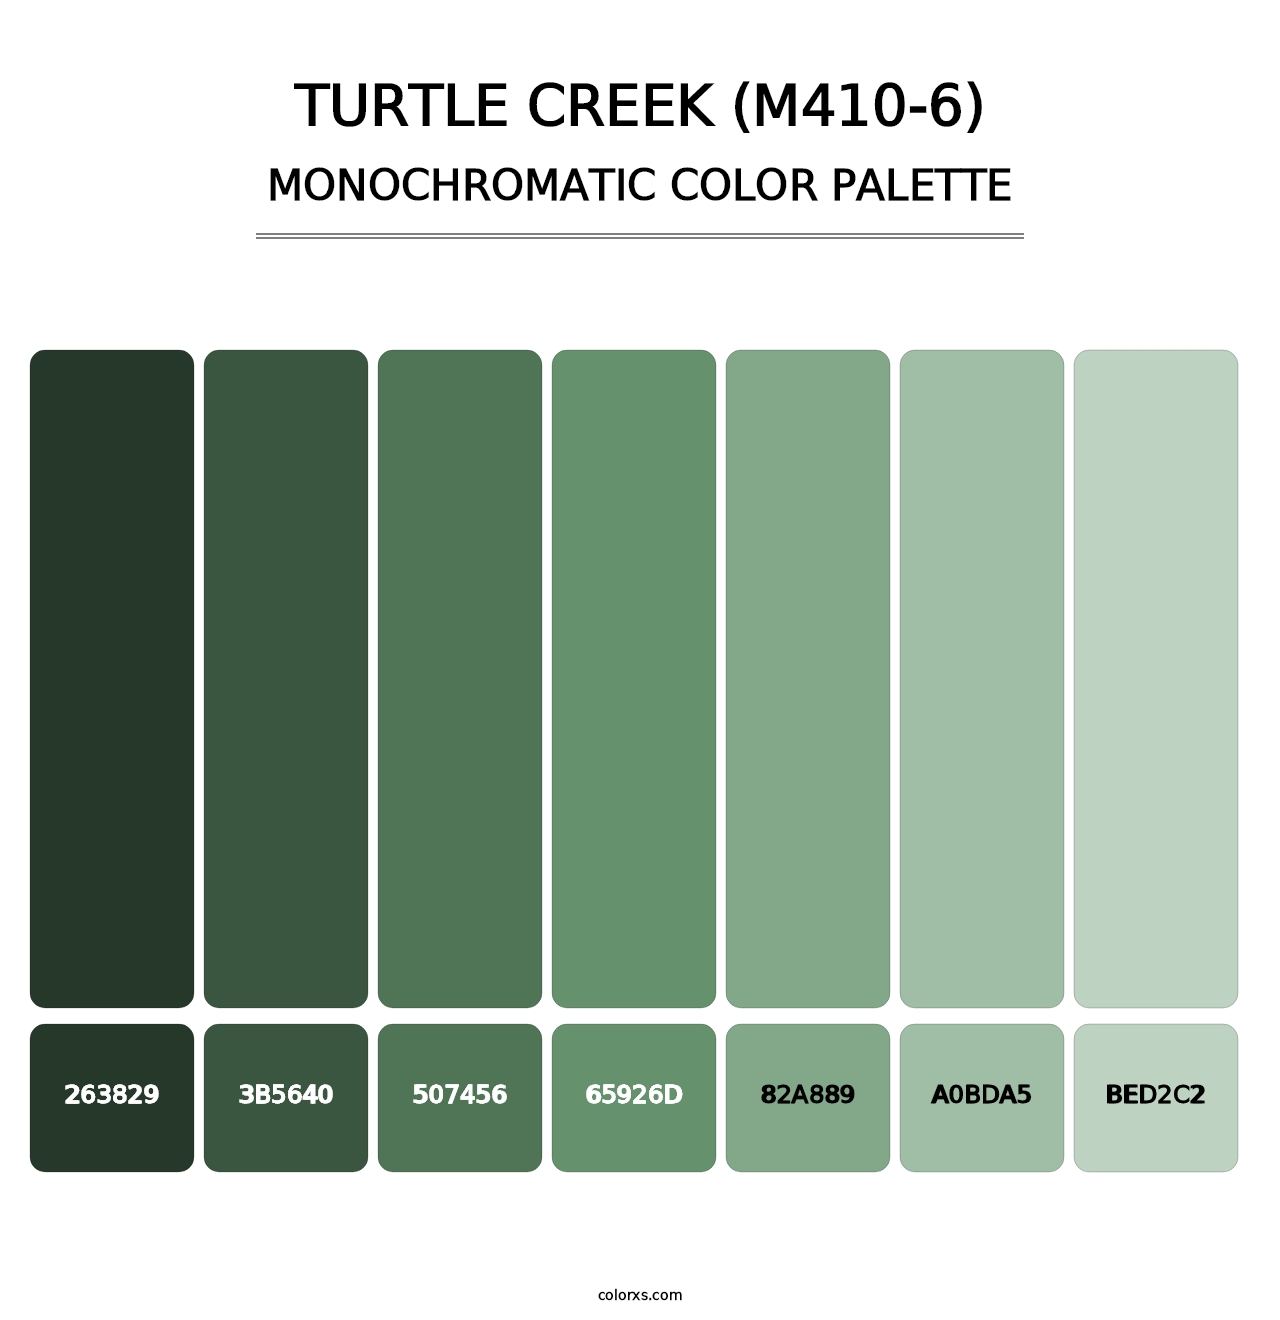 Turtle Creek (M410-6) - Monochromatic Color Palette